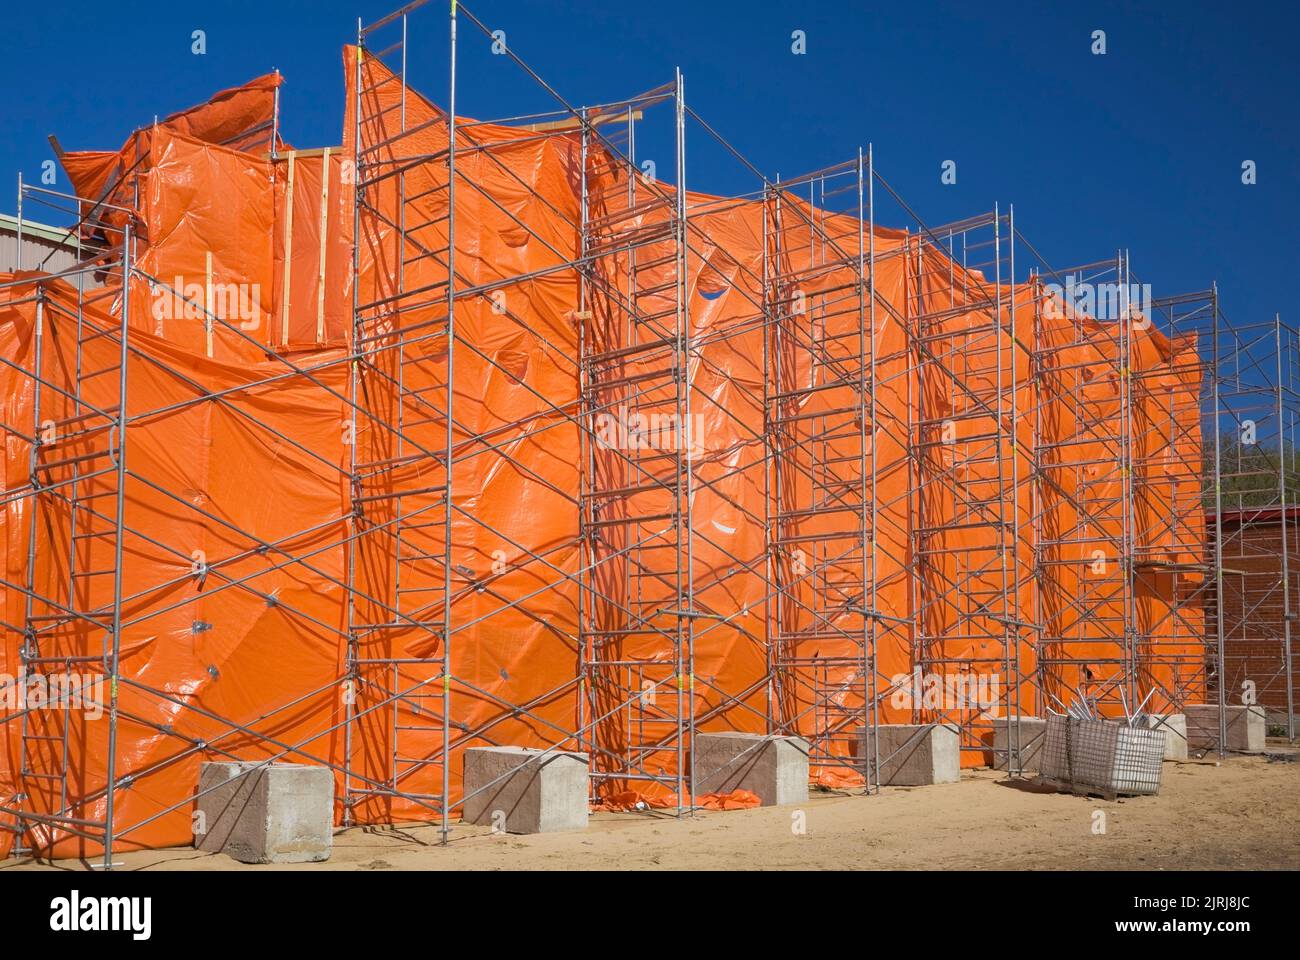 Un bâtiment commercial est recouvert d'une couverture en plastique orange pendant les travaux de rénovation afin de contenir la poussière et les débris. Banque D'Images